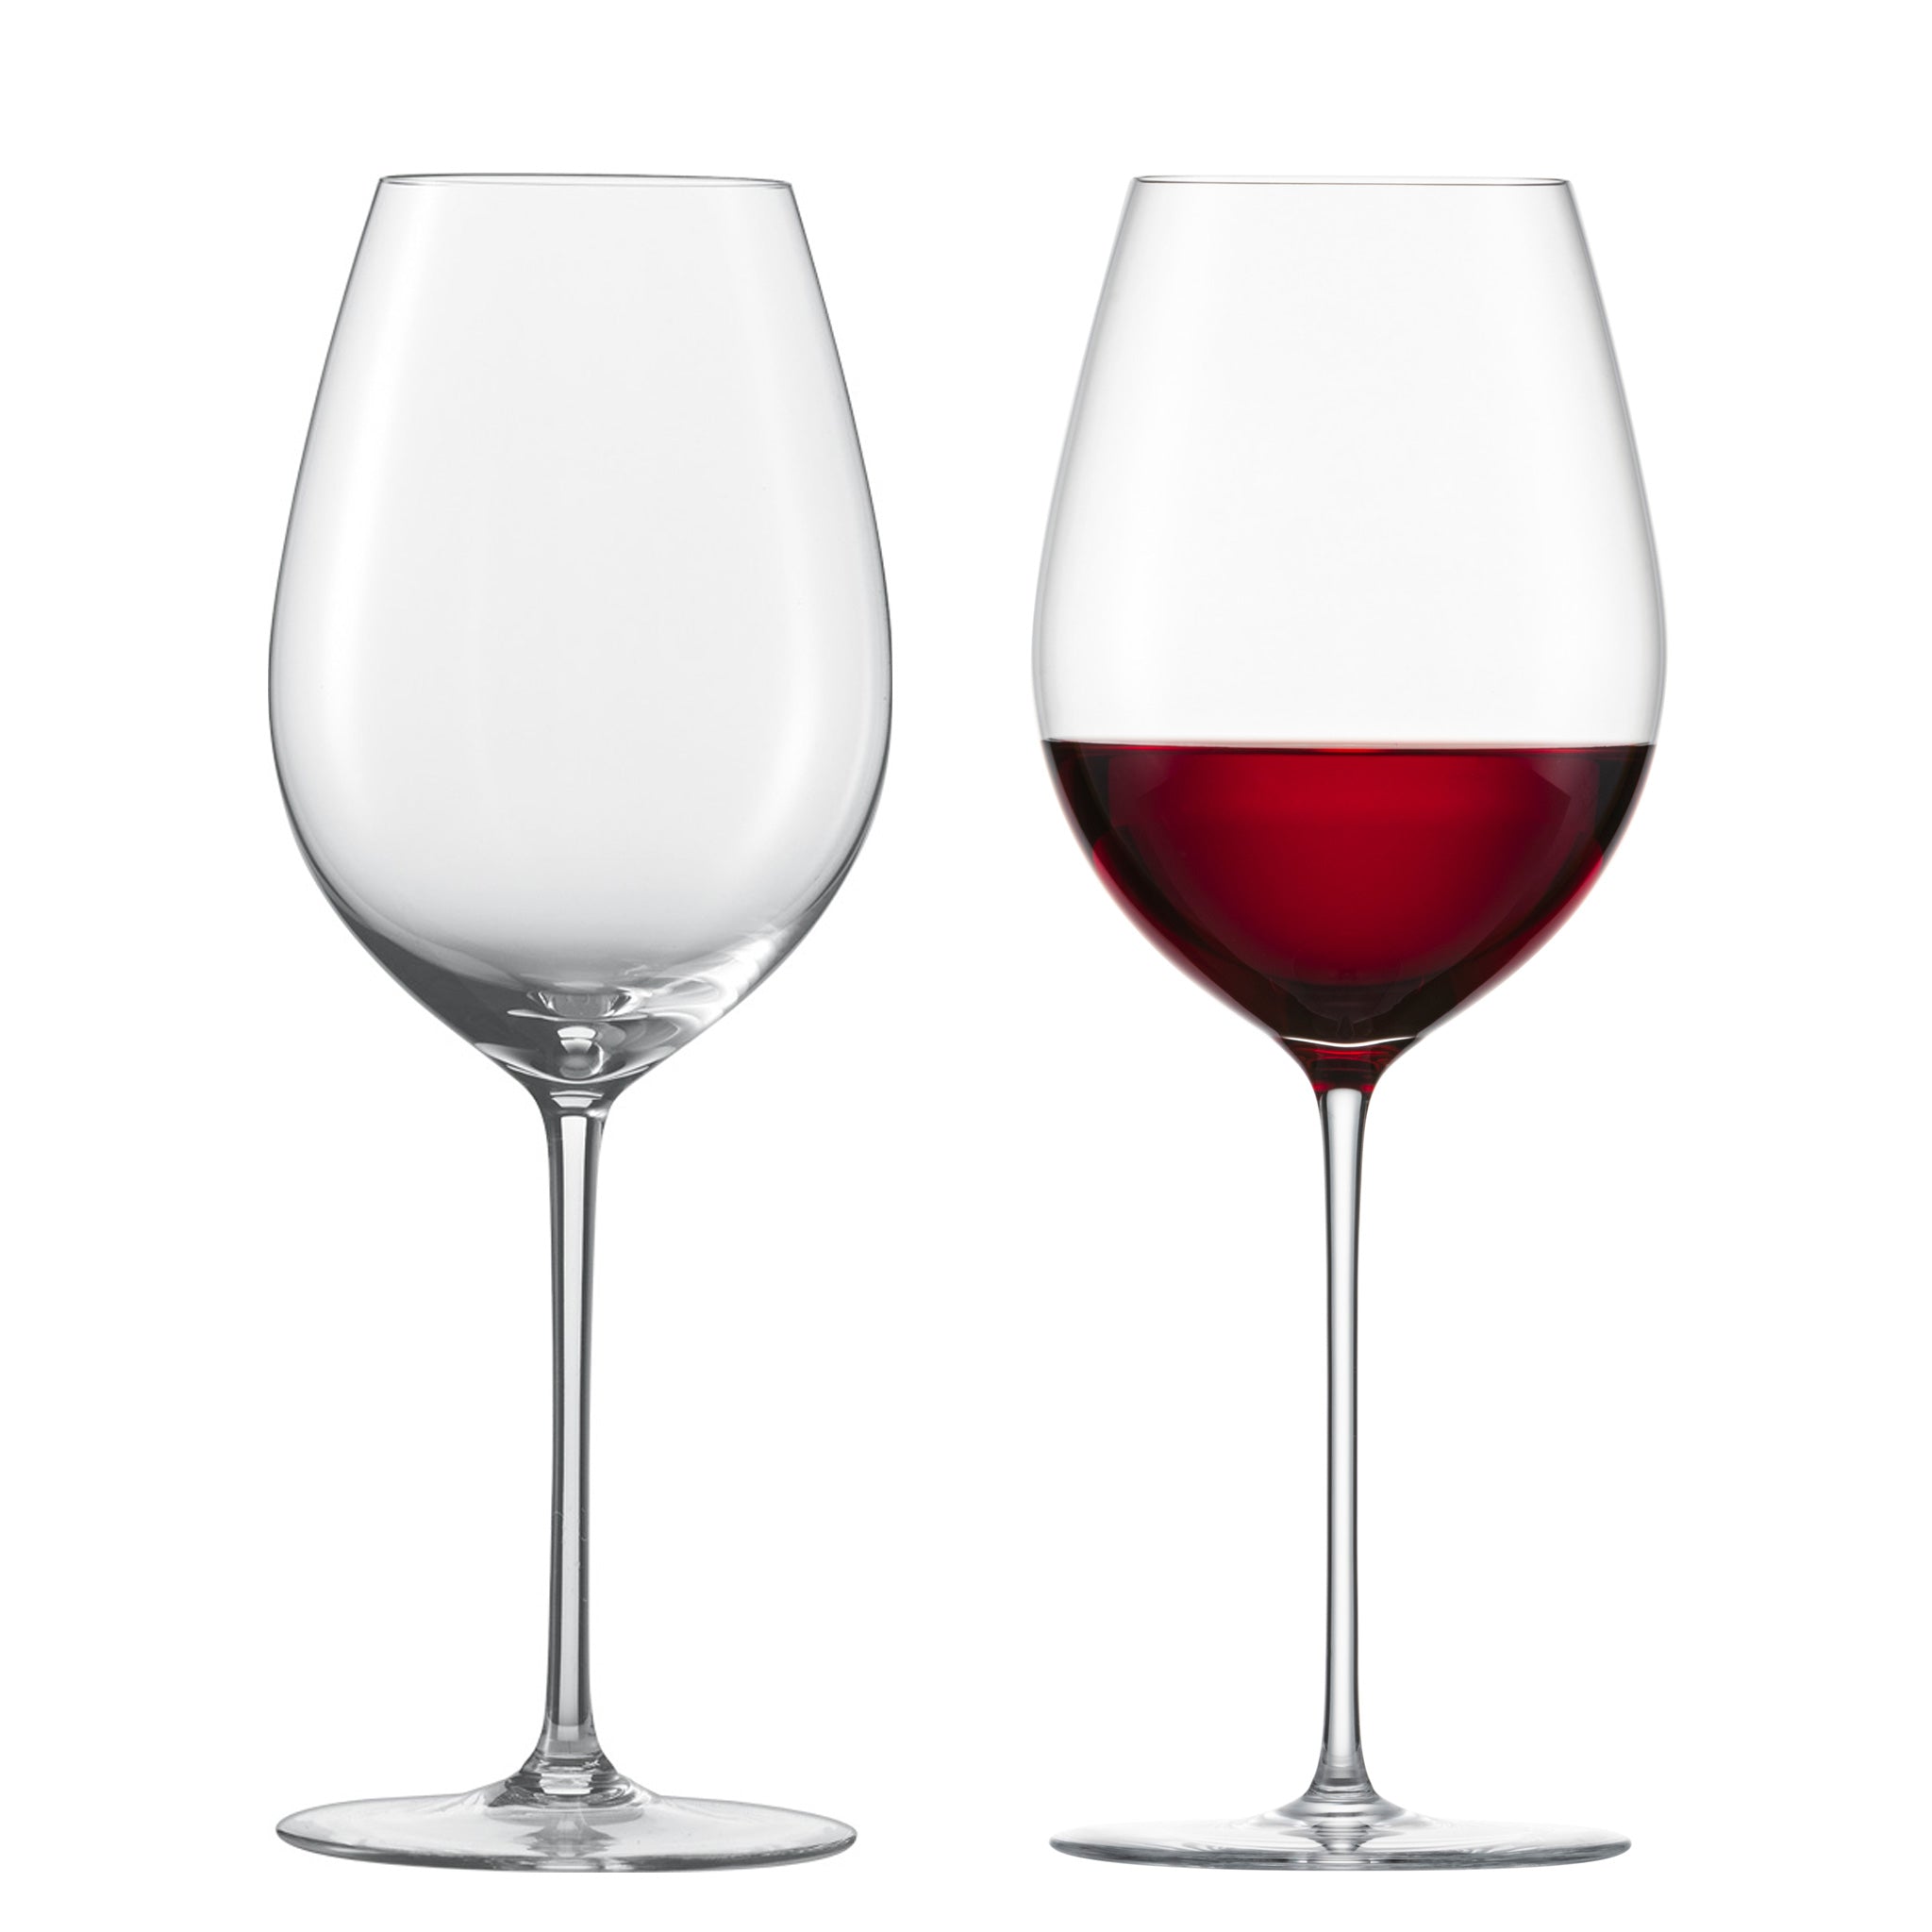 赤ワインに合うグラス ツヴィーゼル公式サイト ツヴィーゼル ジャパン